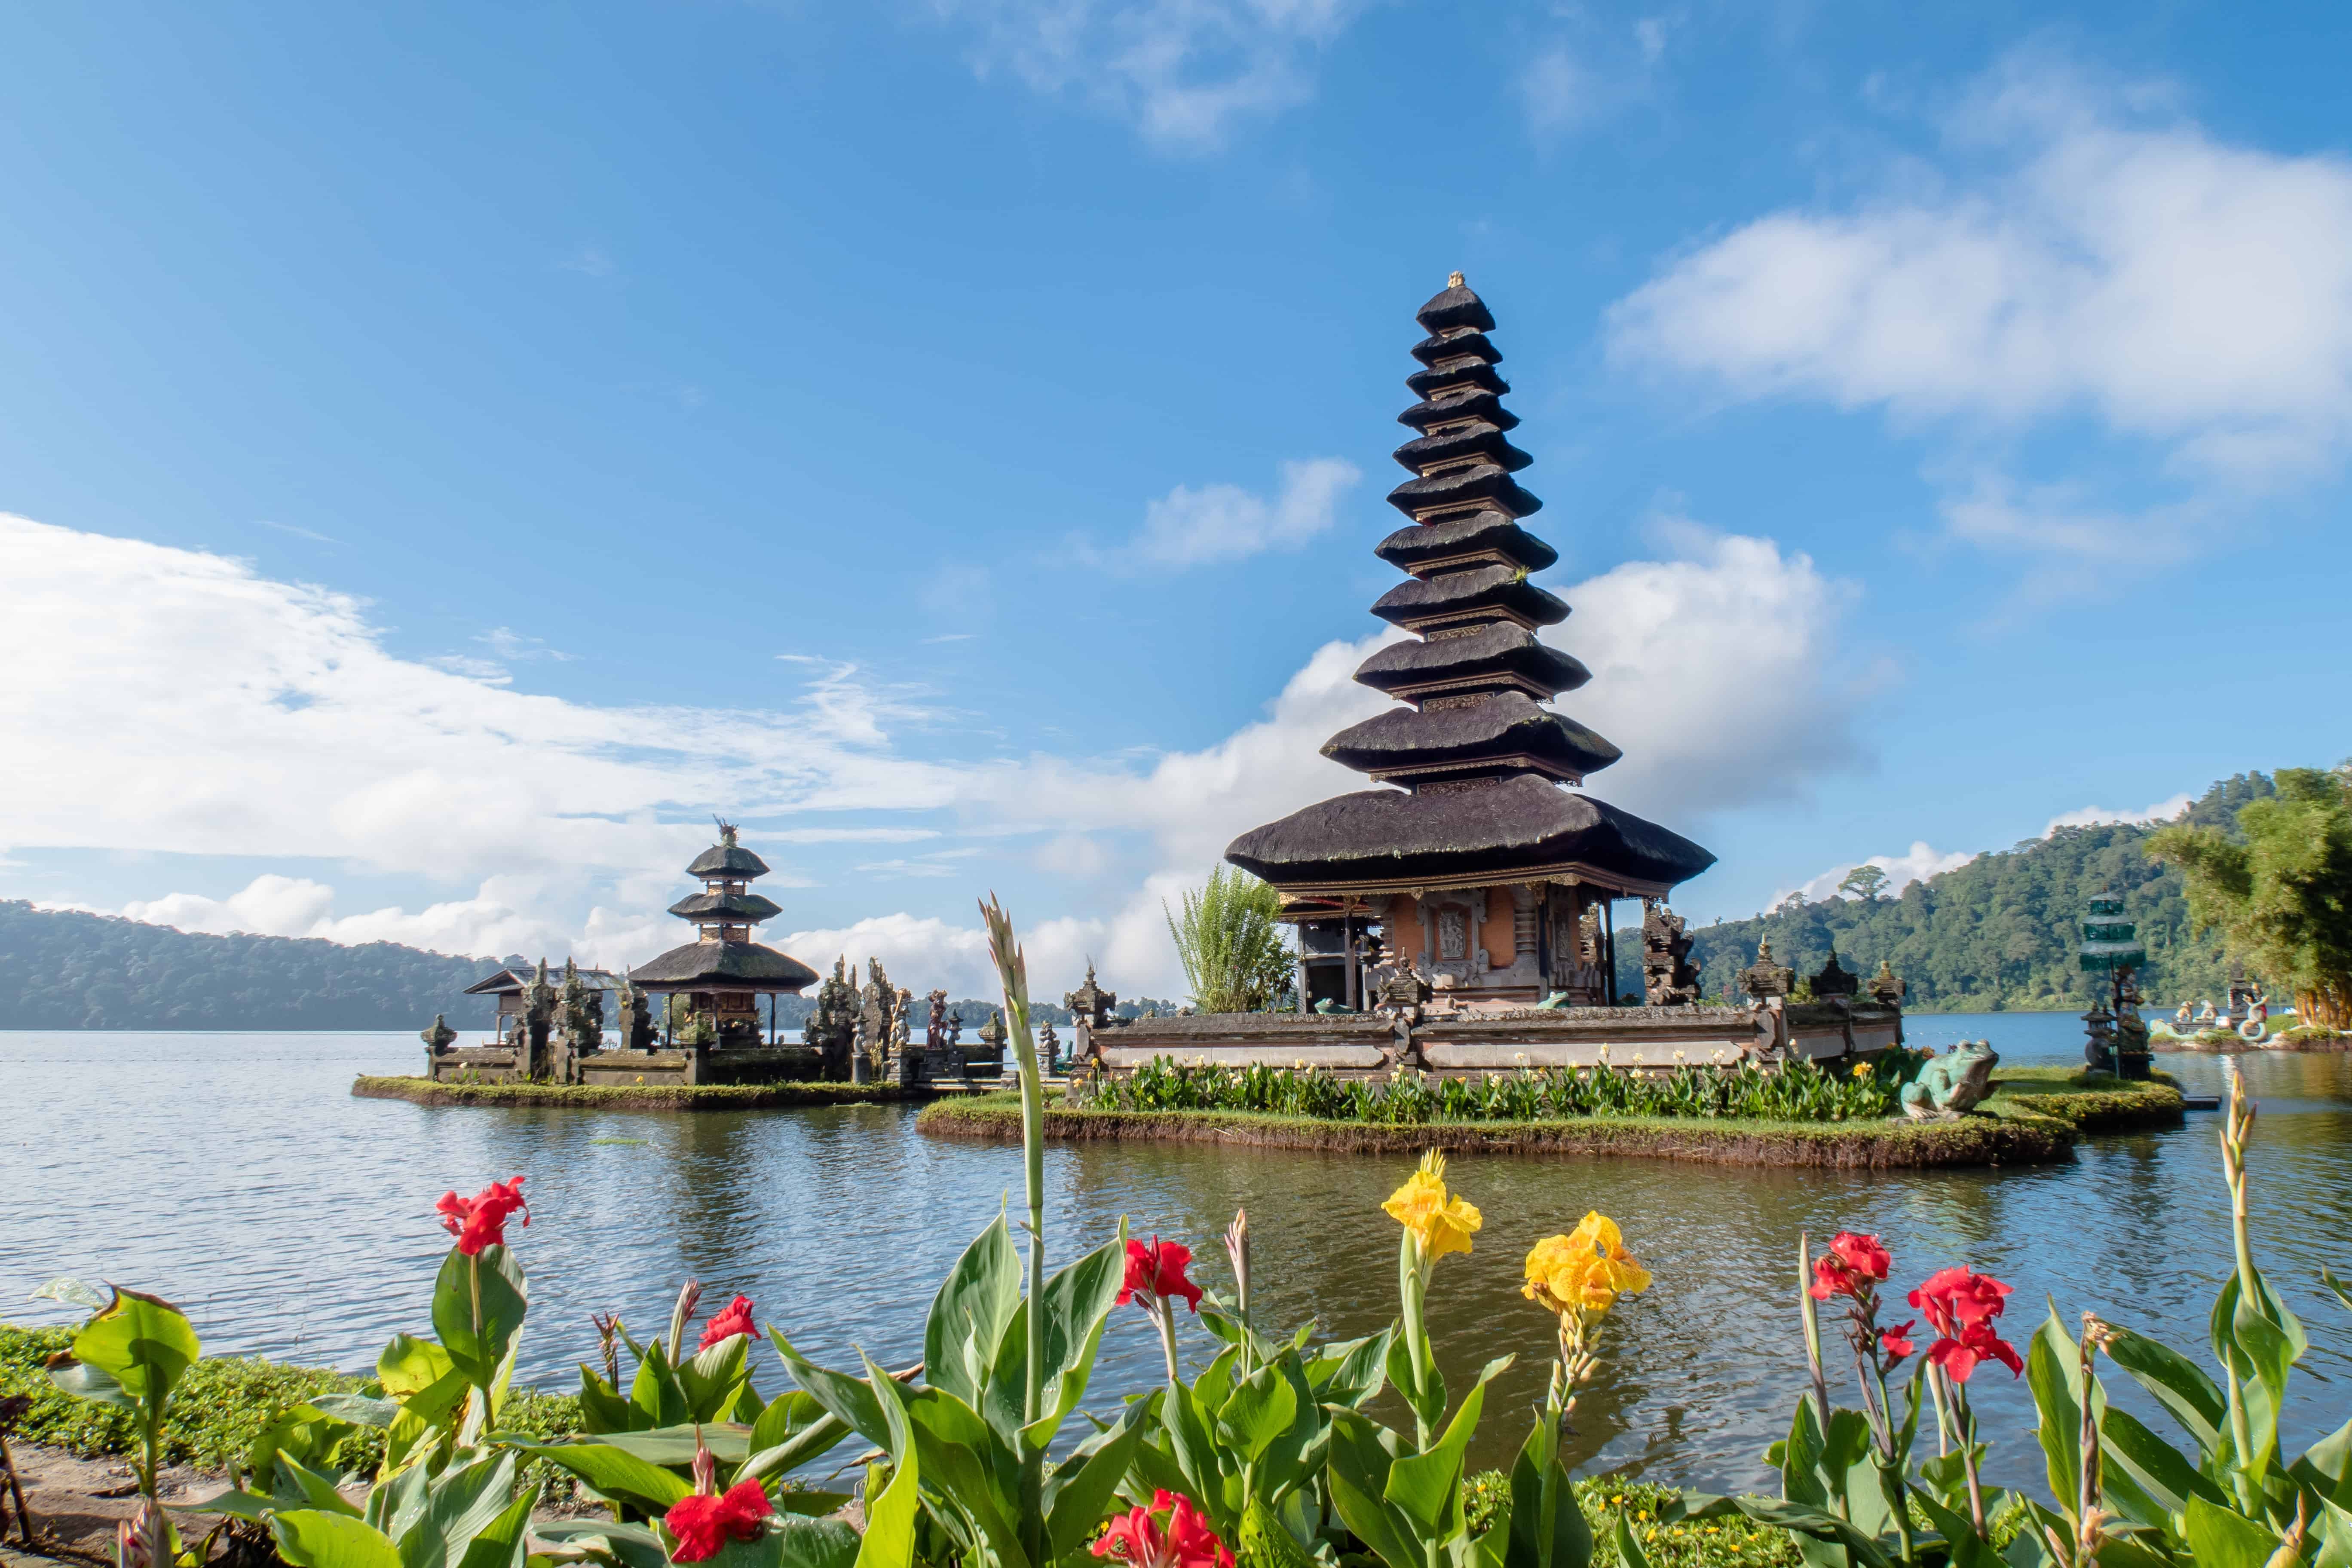 Stunning Balinese temple